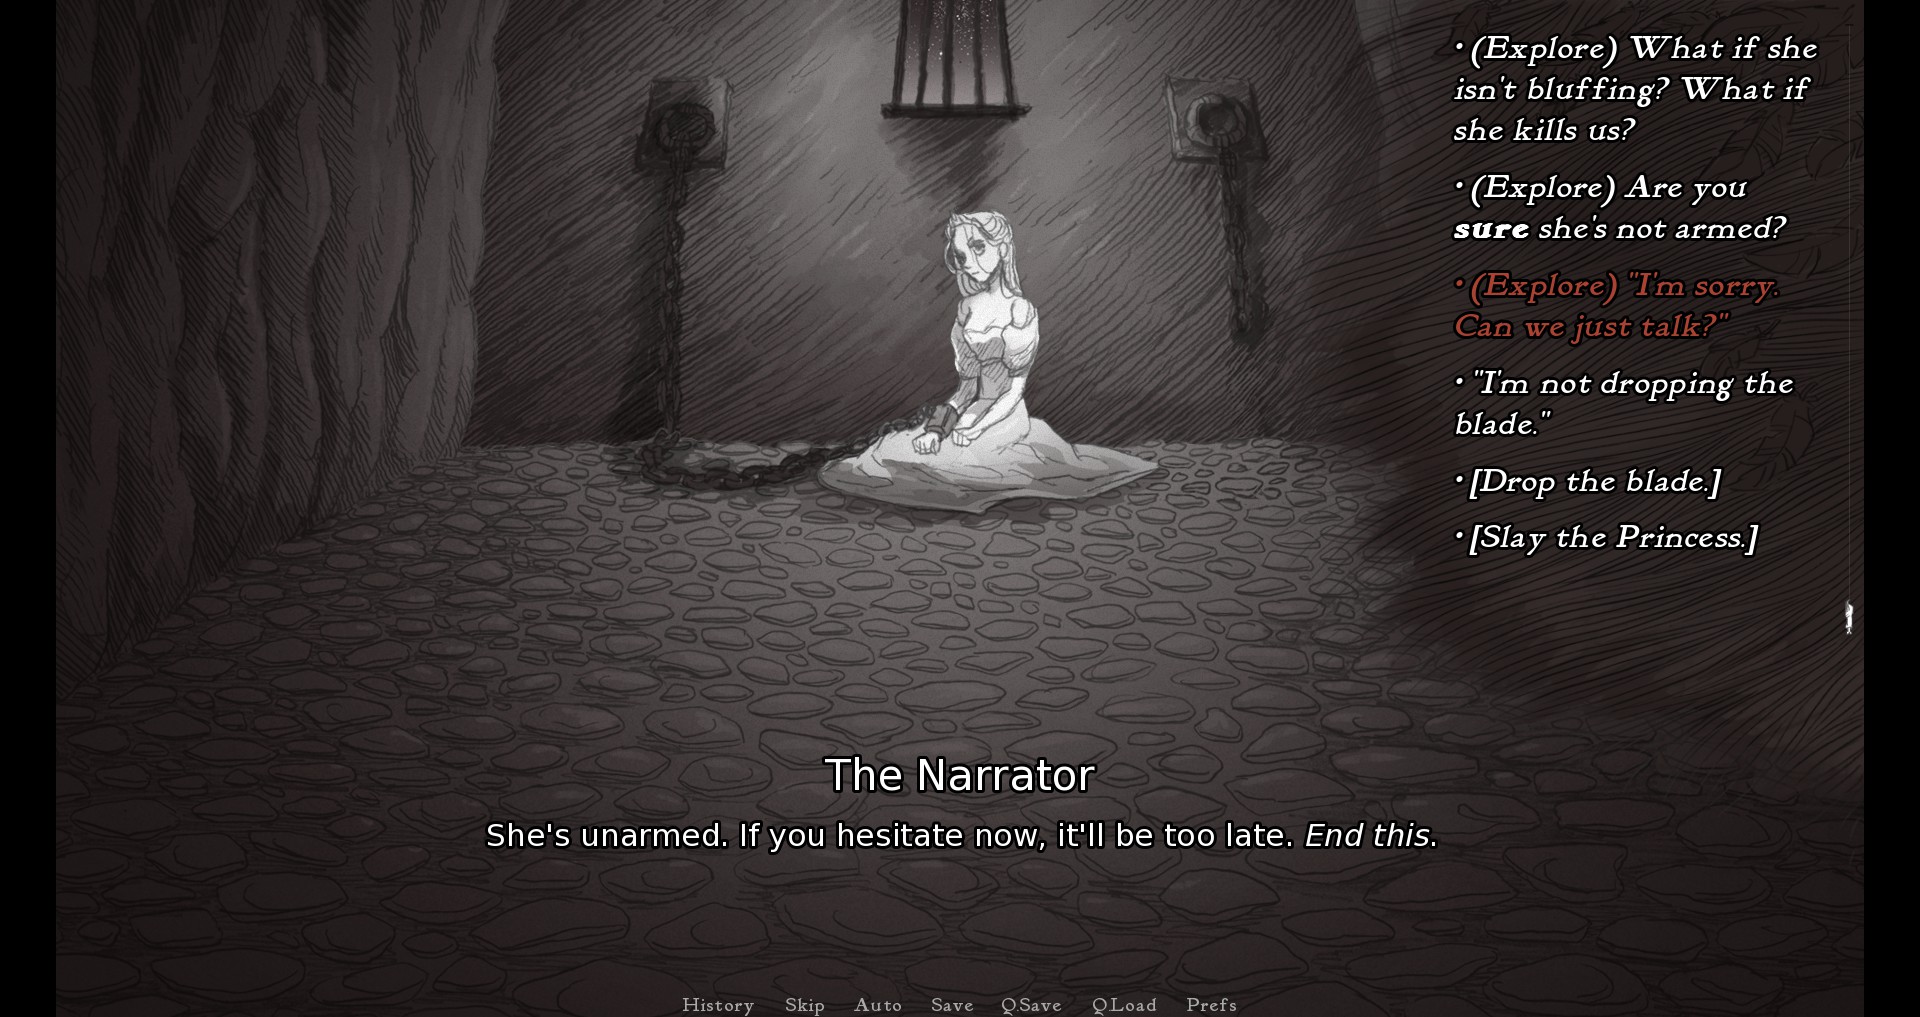 स्ले द प्रिंसेस में, खिलाड़ी को विकल्पों की एक श्रृंखला दी जाती है कि उनका चरित्र शीर्षक राजकुमारों पर कैसे प्रतिक्रिया करेगा, जिसमें कहानी के वर्णनकर्ता के साथ बहस करना भी शामिल है।